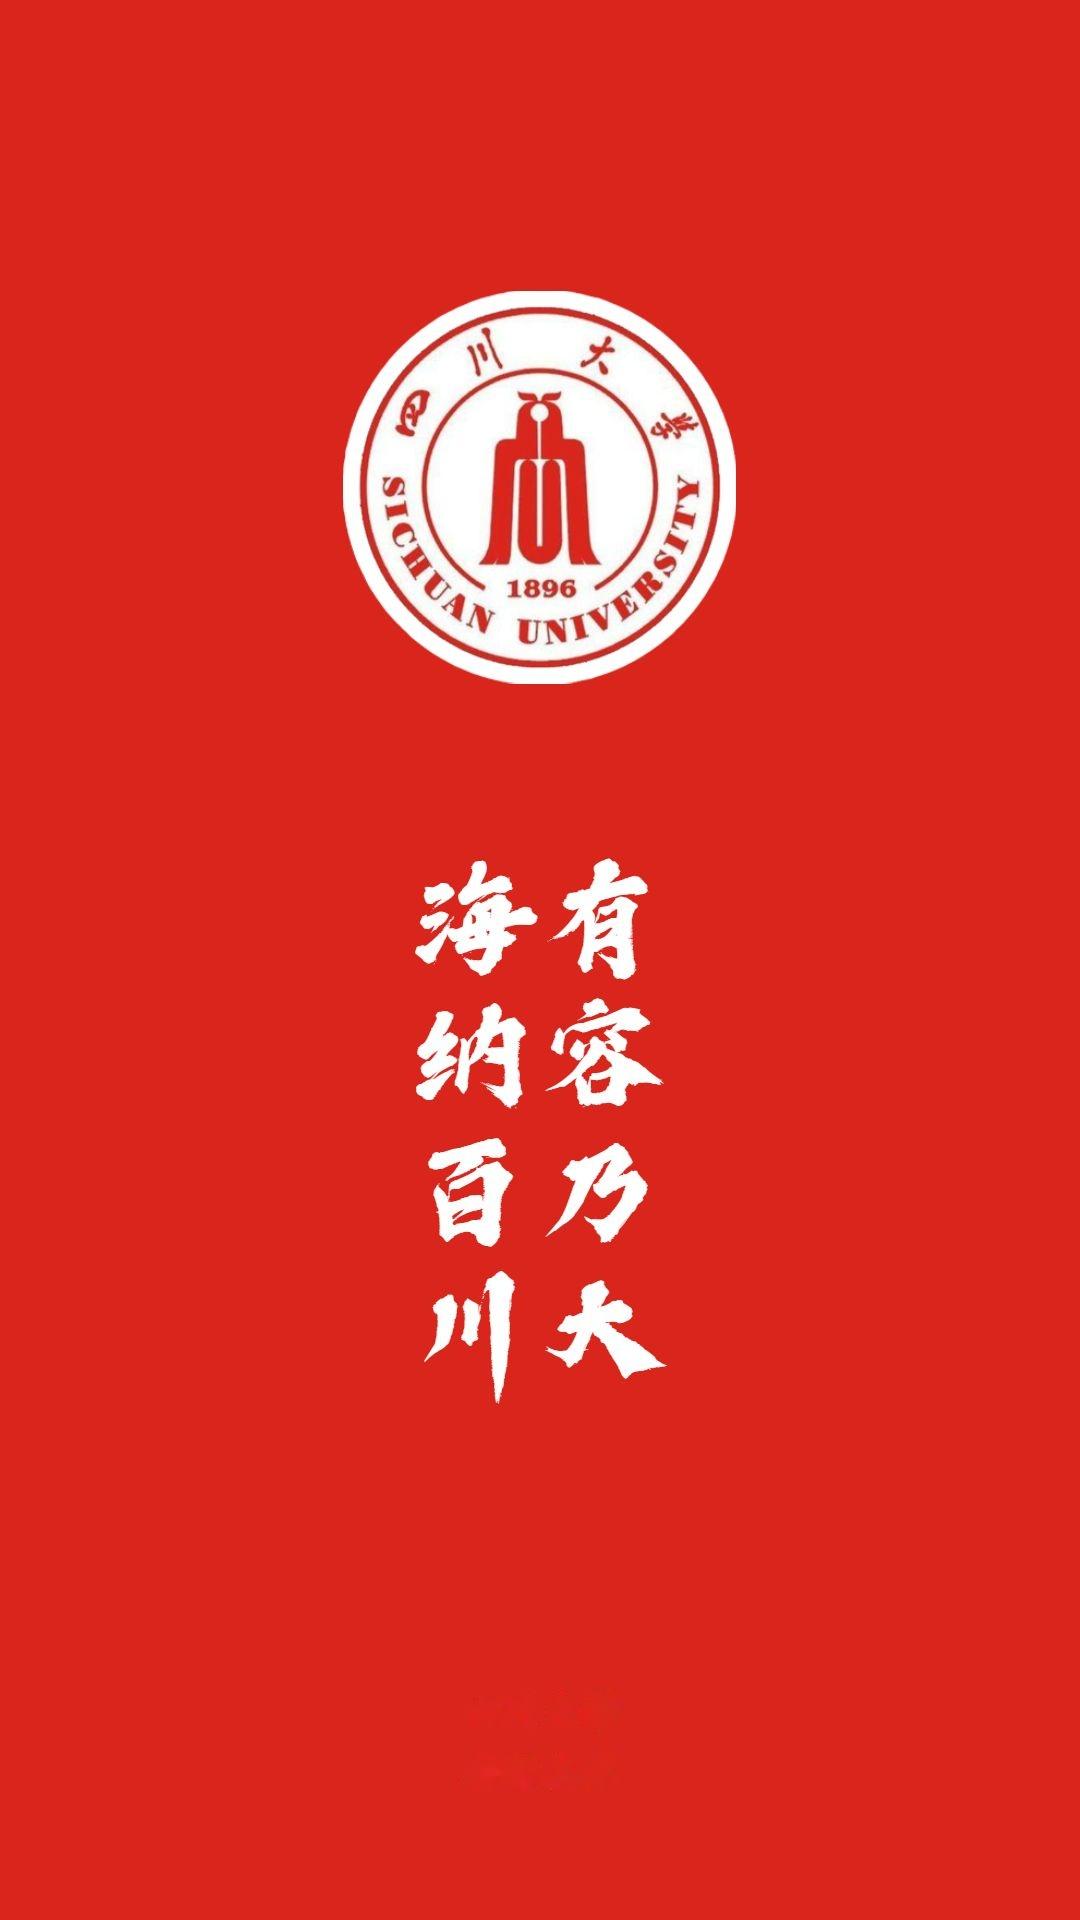 985大学校徽 壁纸图片